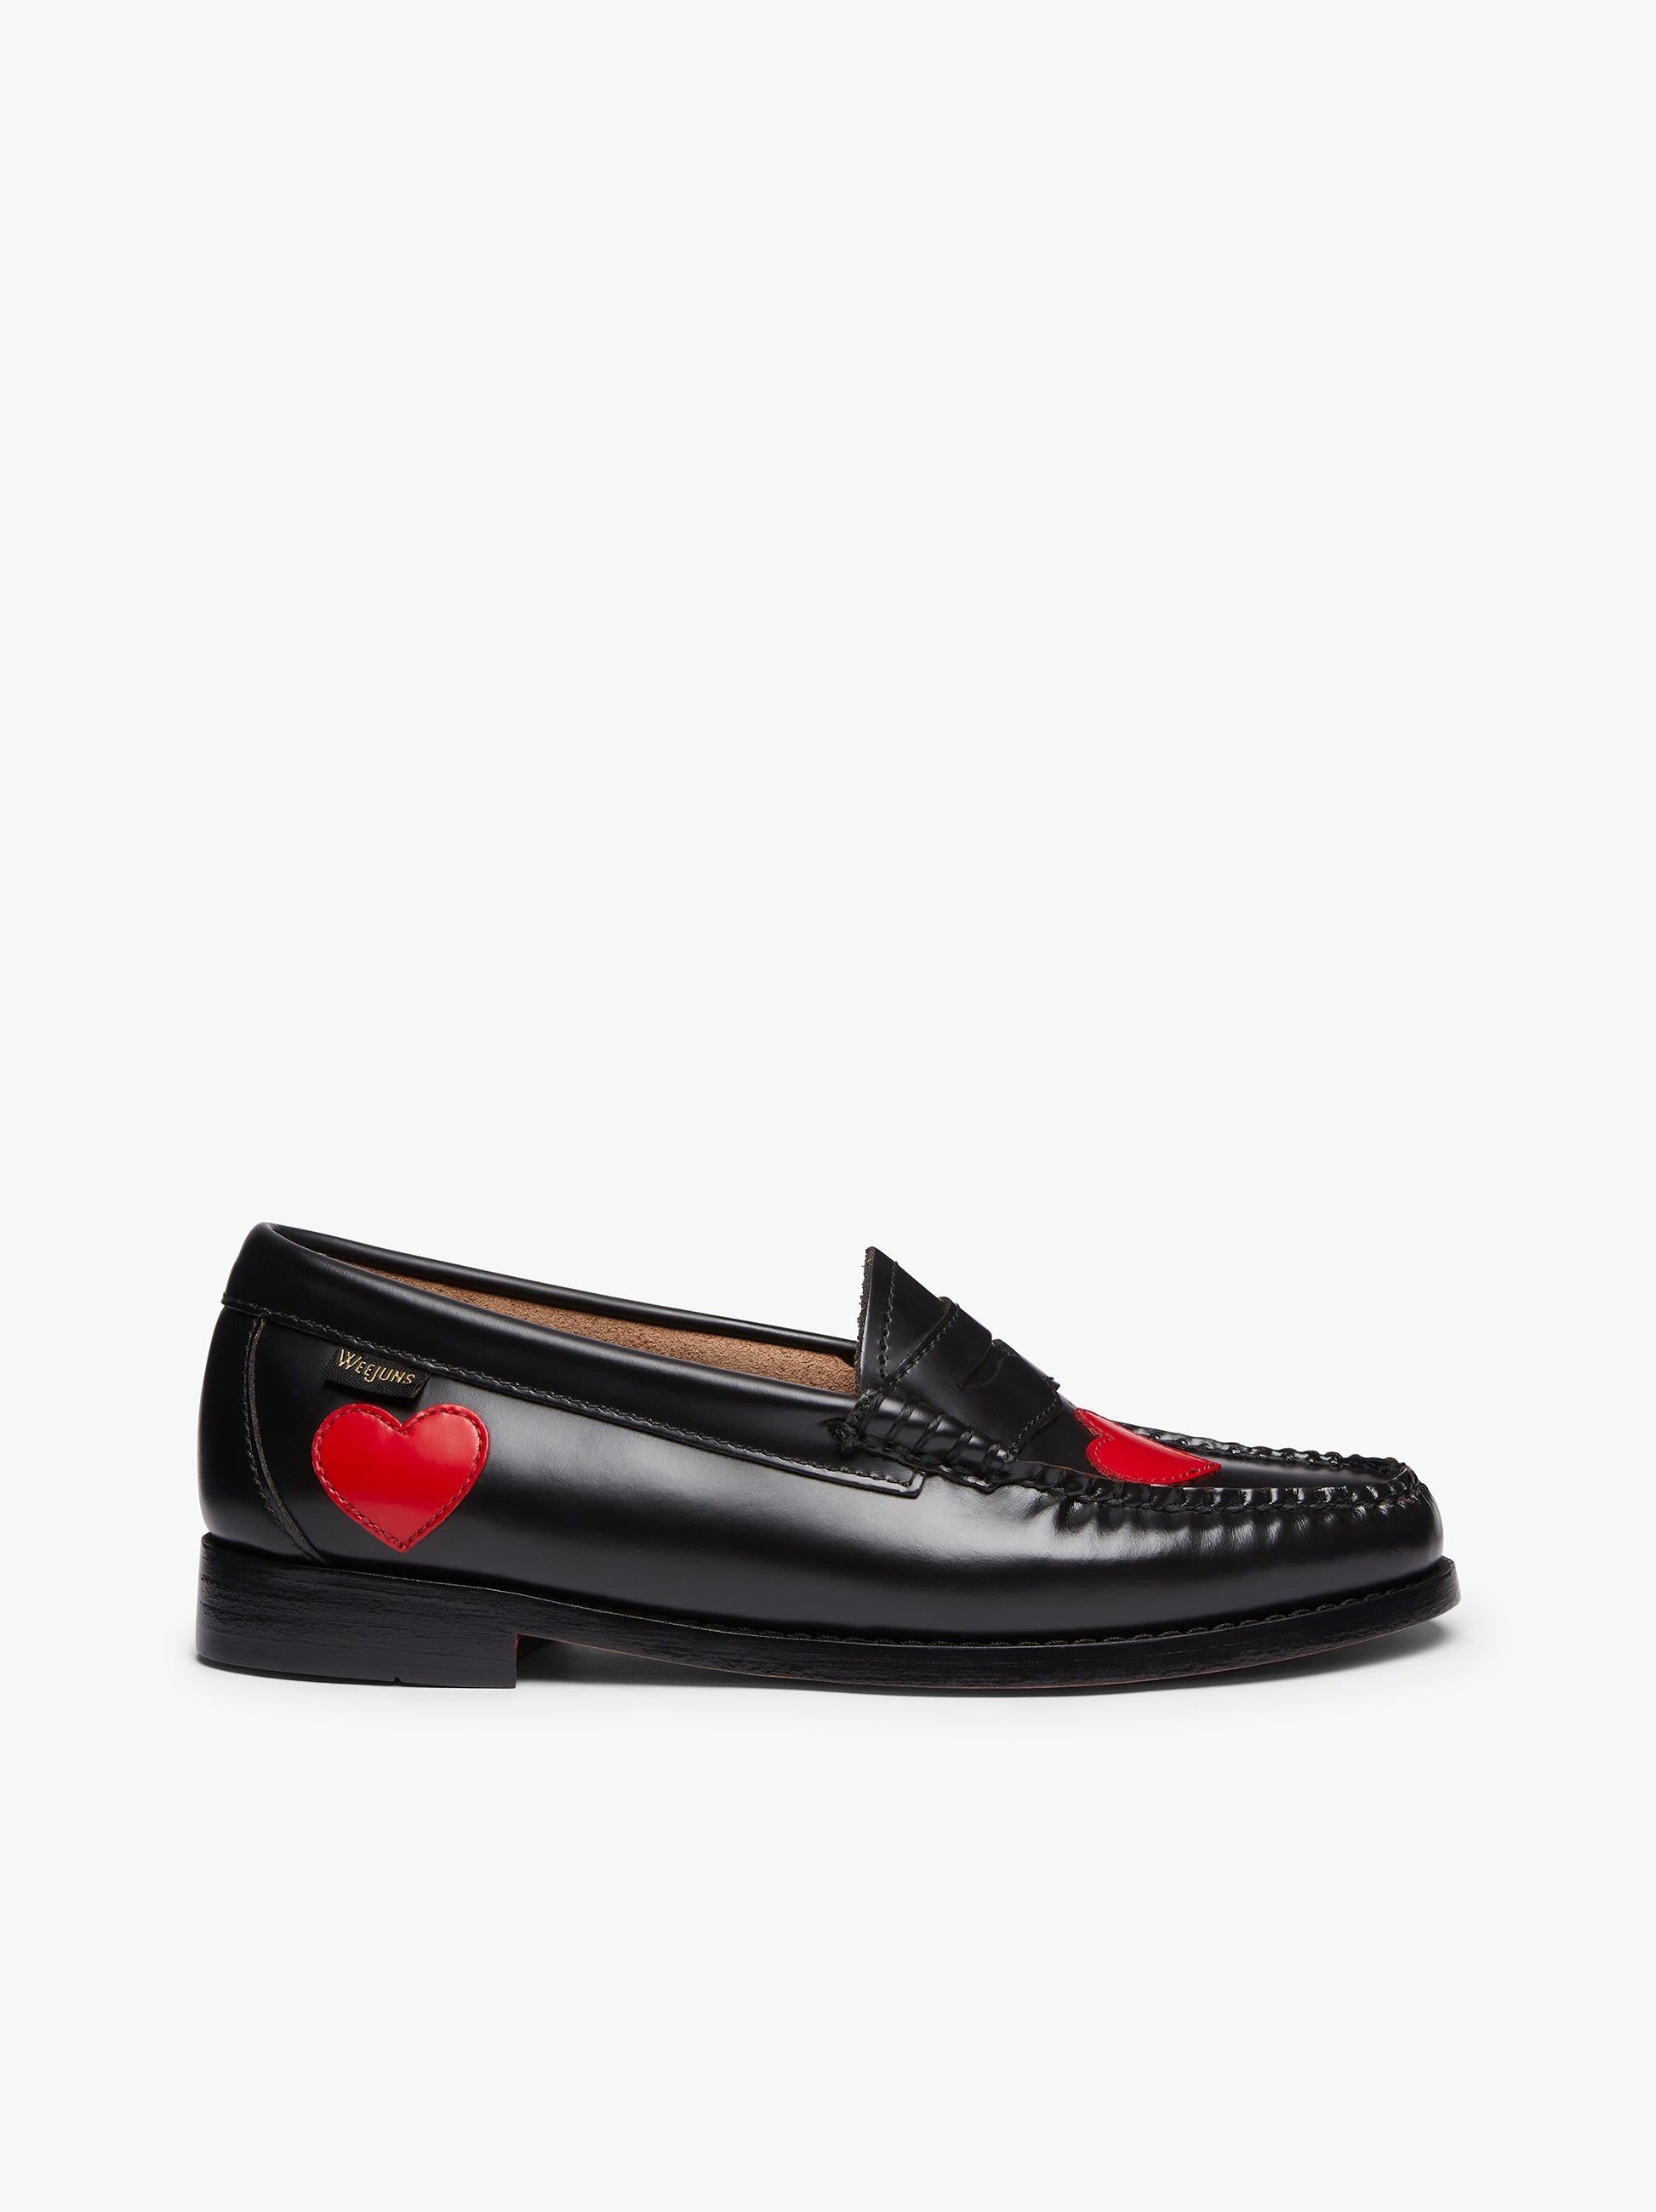 激安な the ローファー/革靴 Virgins heart logo loafer the レディース